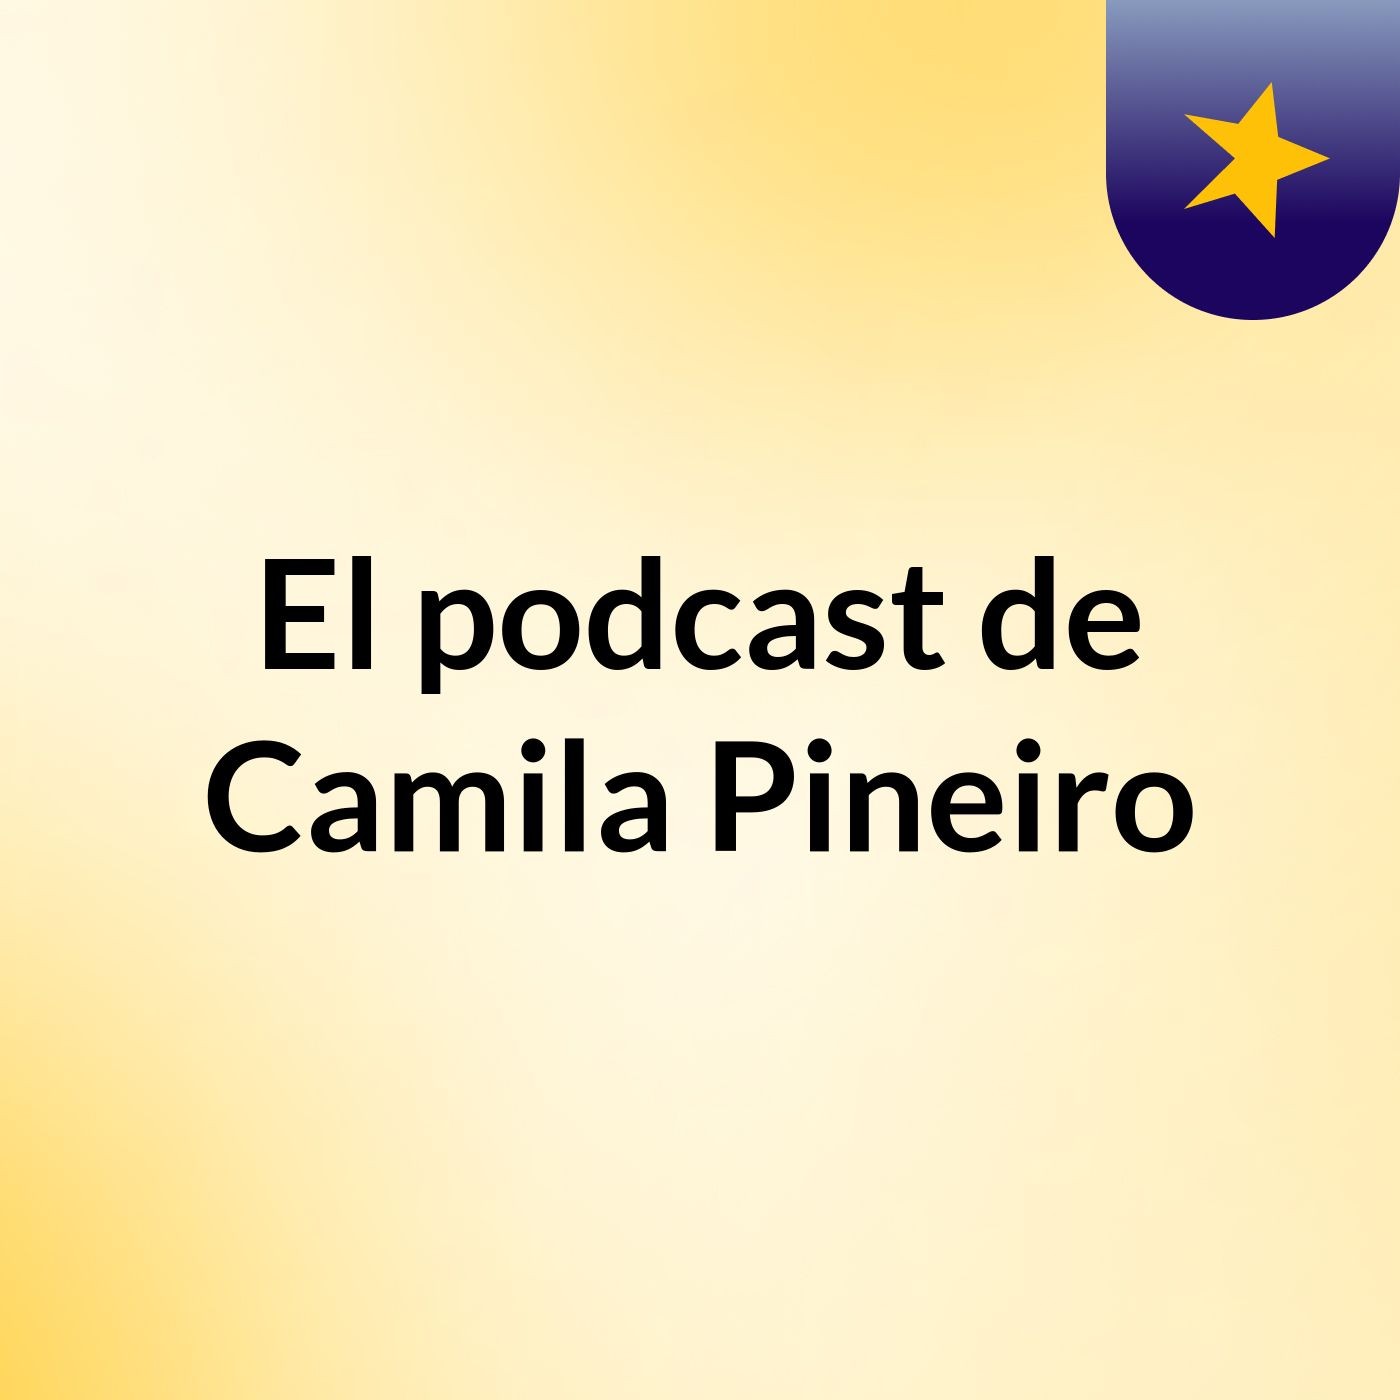 El podcast de Camila Pineiro